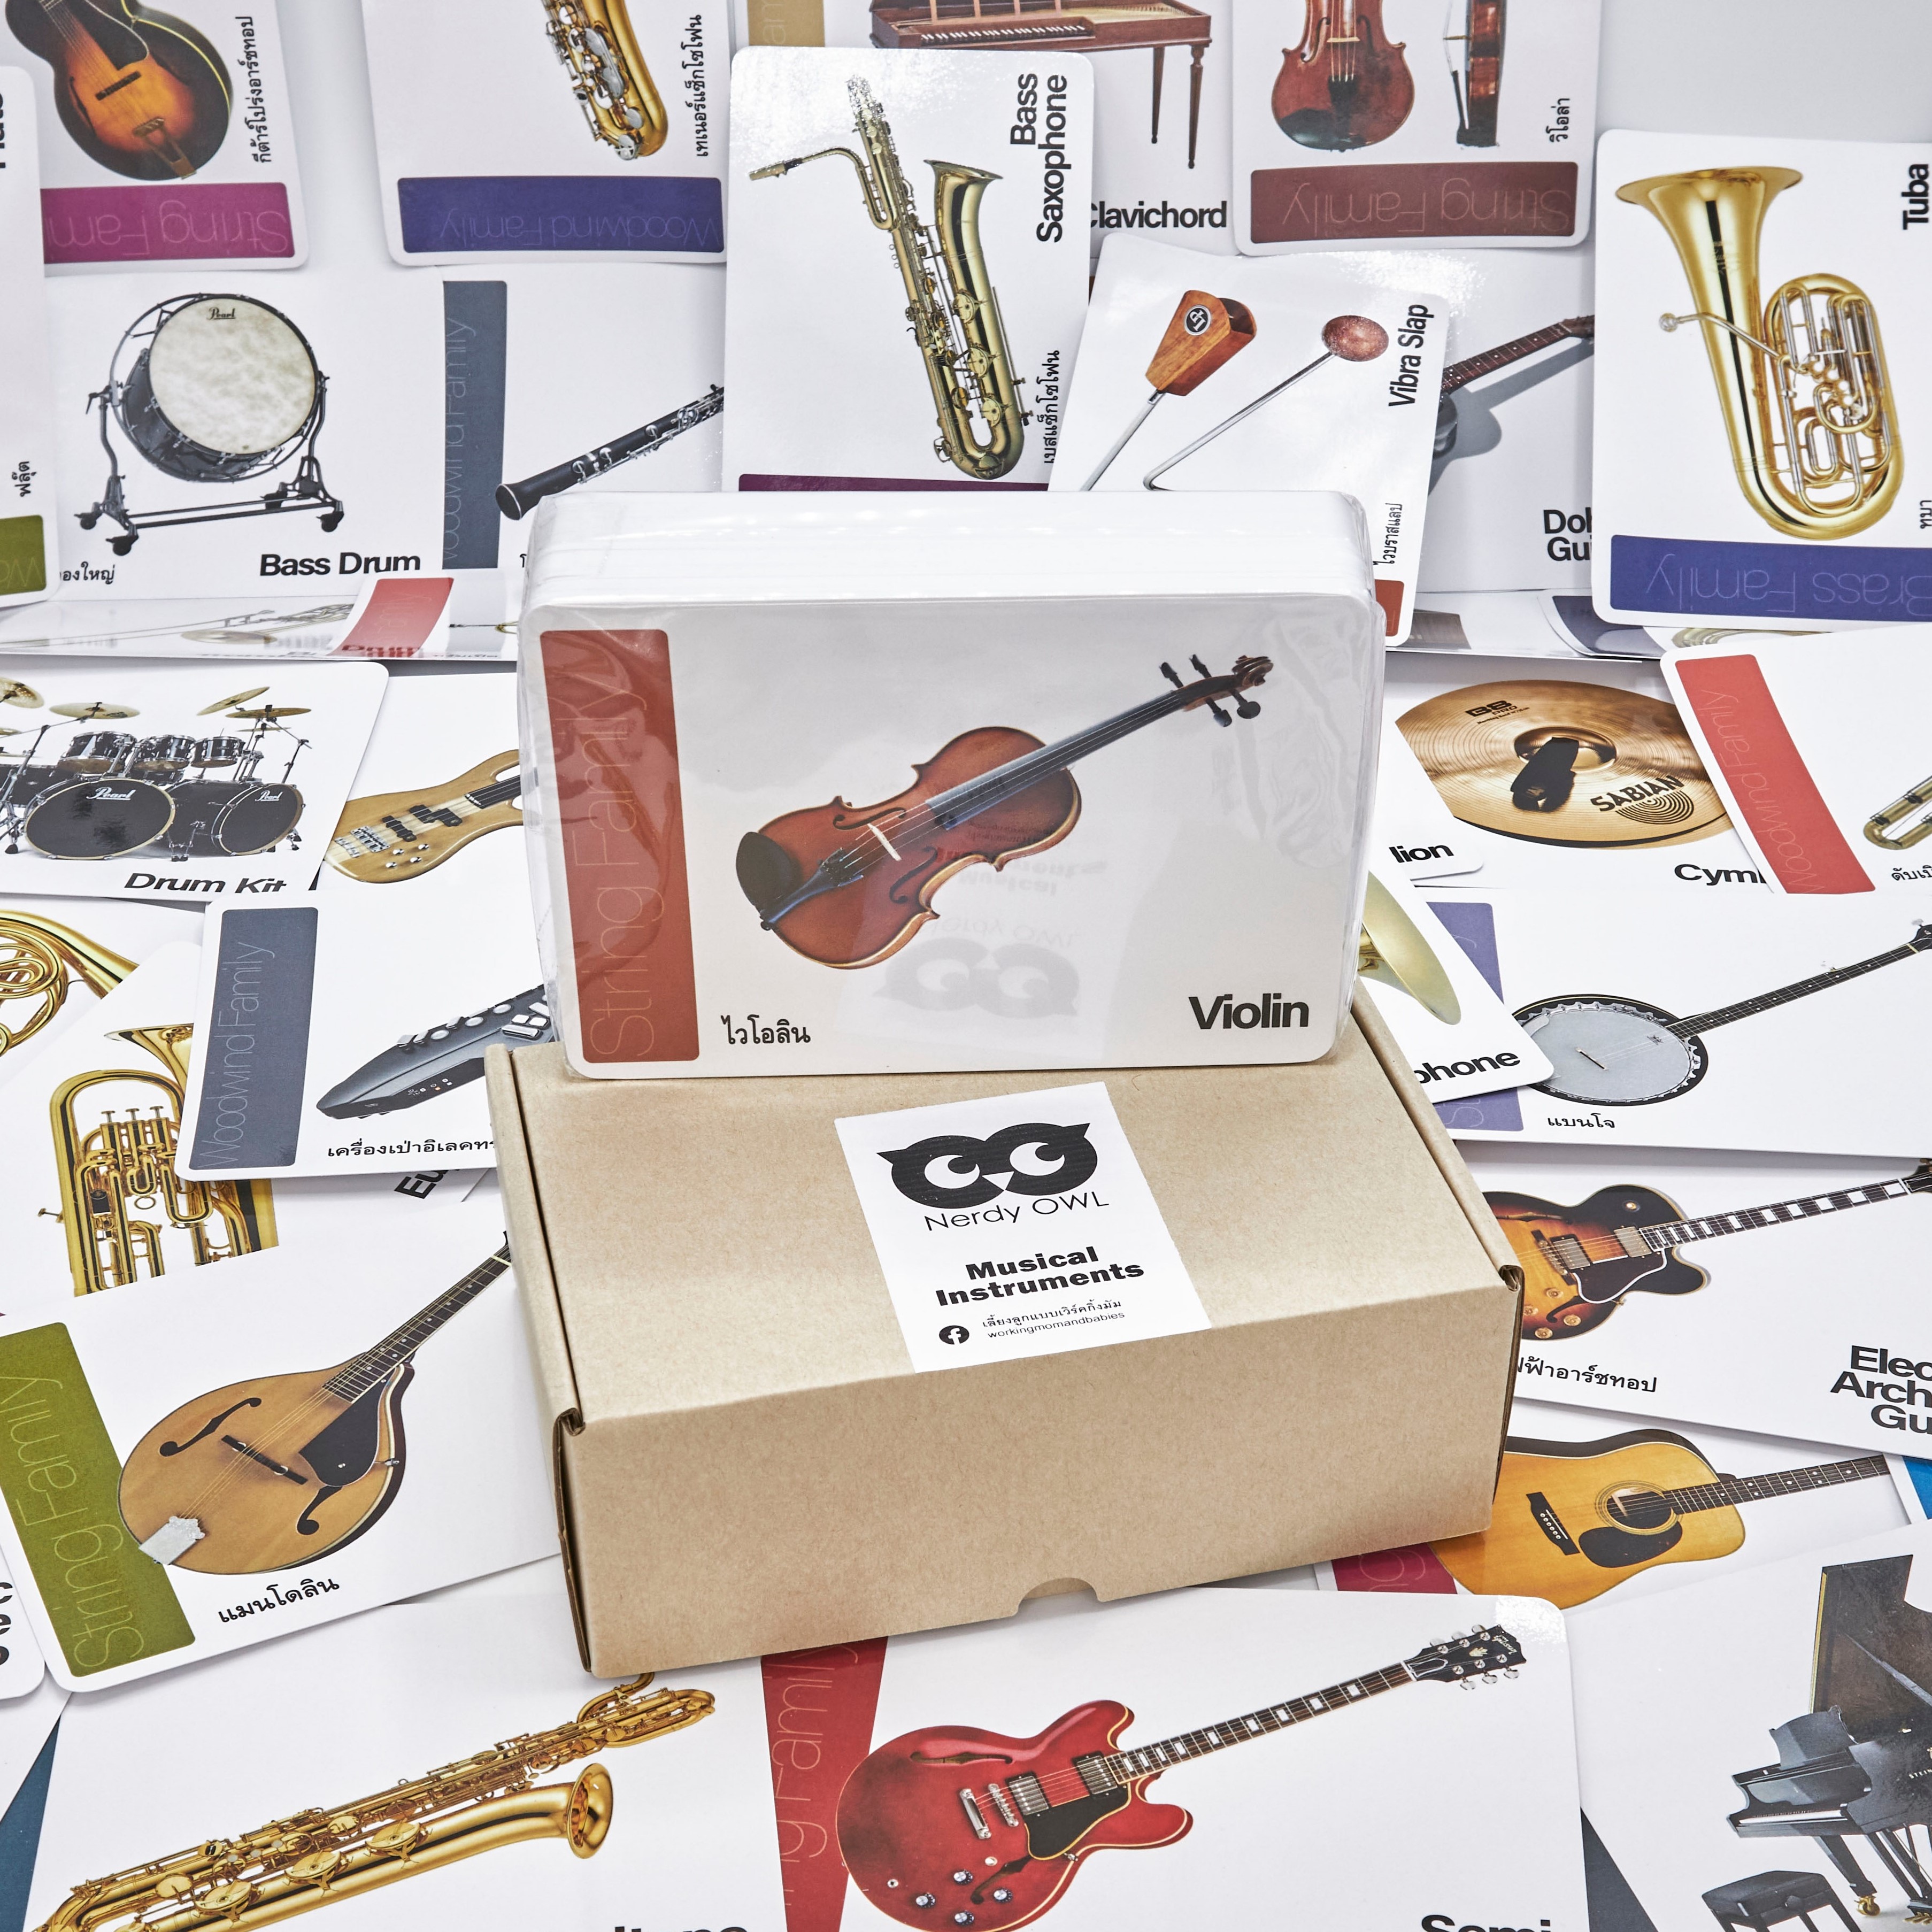 แฟลชการ์ด เครื่องดนตรี Flash Cards Musical Instruments บัตรคำ การ์ดคำศัพท์ เนิร์ดดี้อาว (Nerdy Owl) จำนวนมากที่สุดถึง 108 ใบ ของเล่นเสริมพัฒนาการ